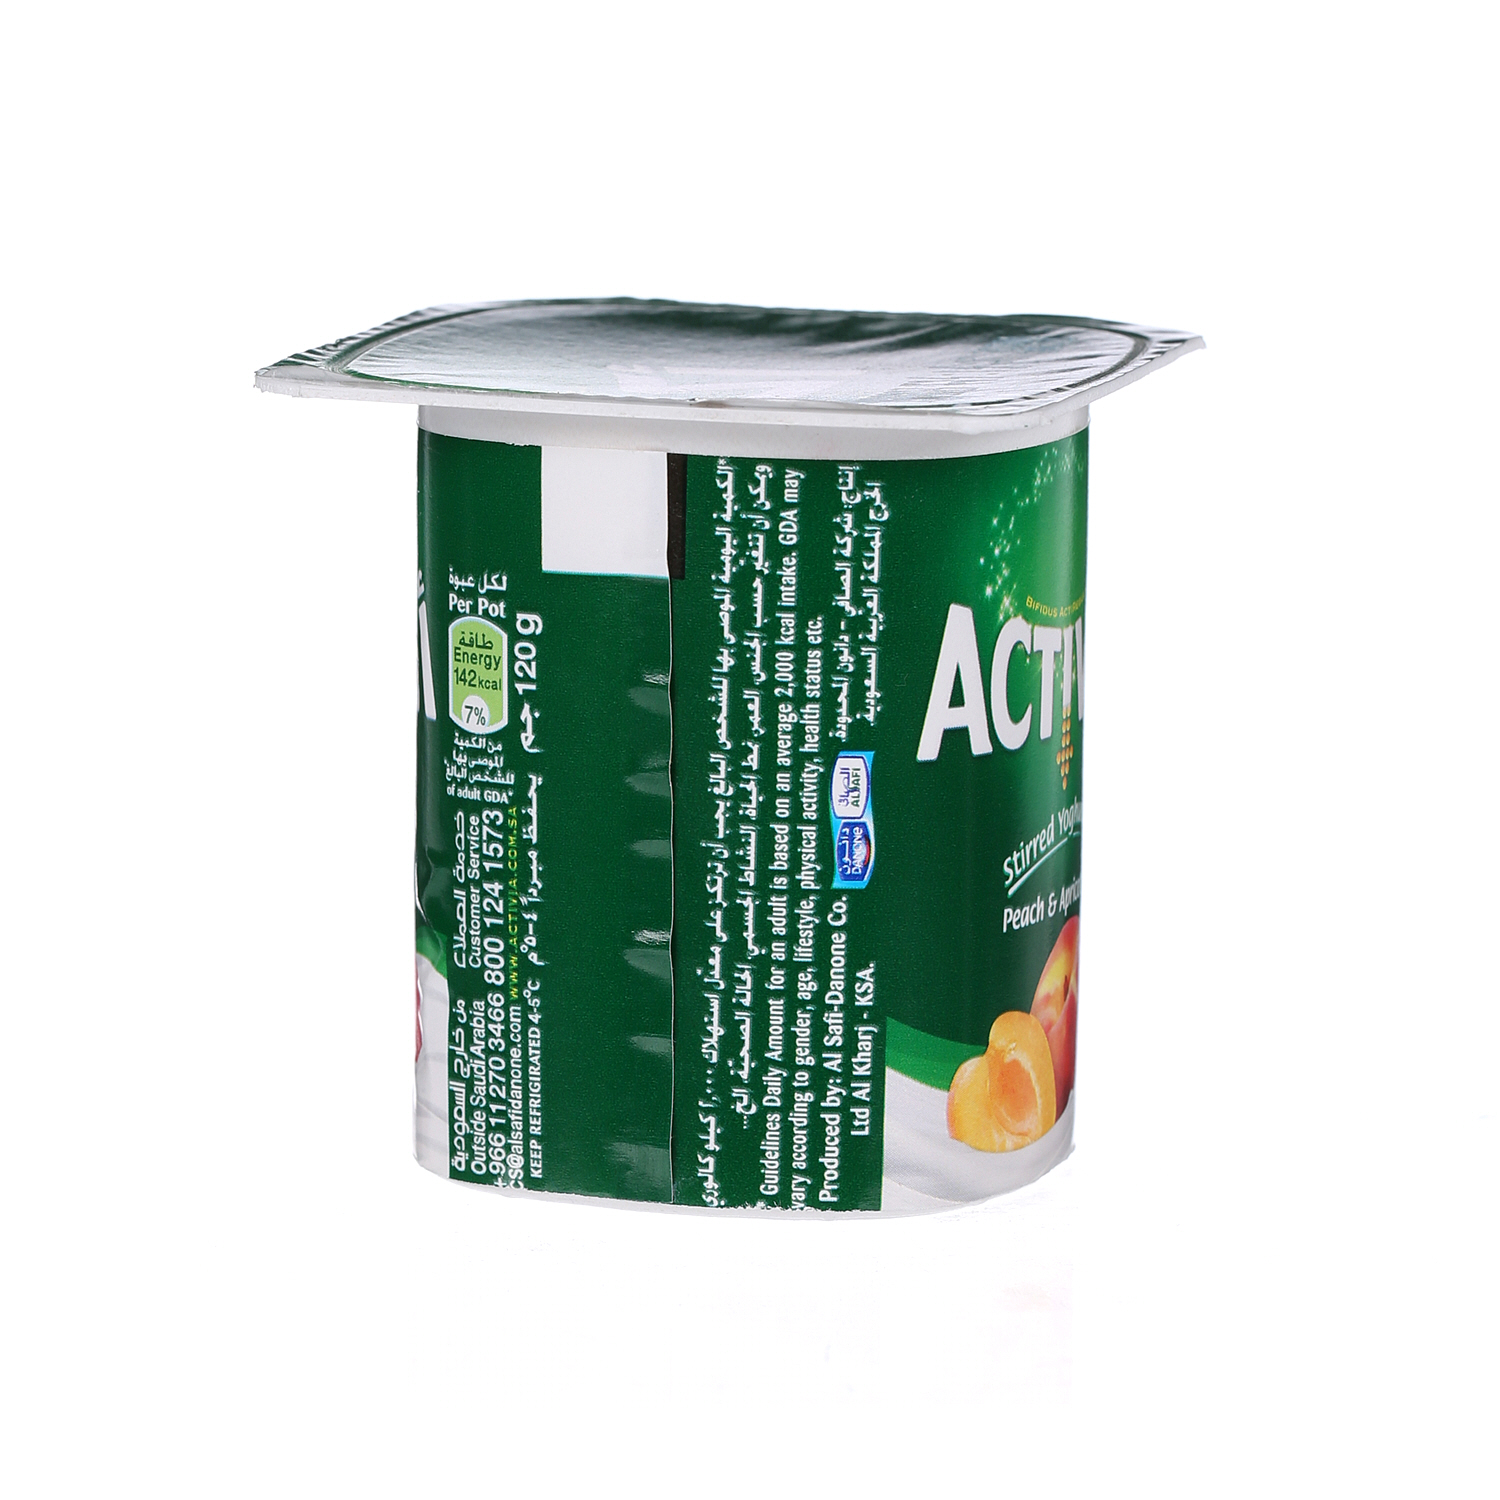 Al Safi Danone Activia Flavoured Youghurt Peach & Apricot 120 g